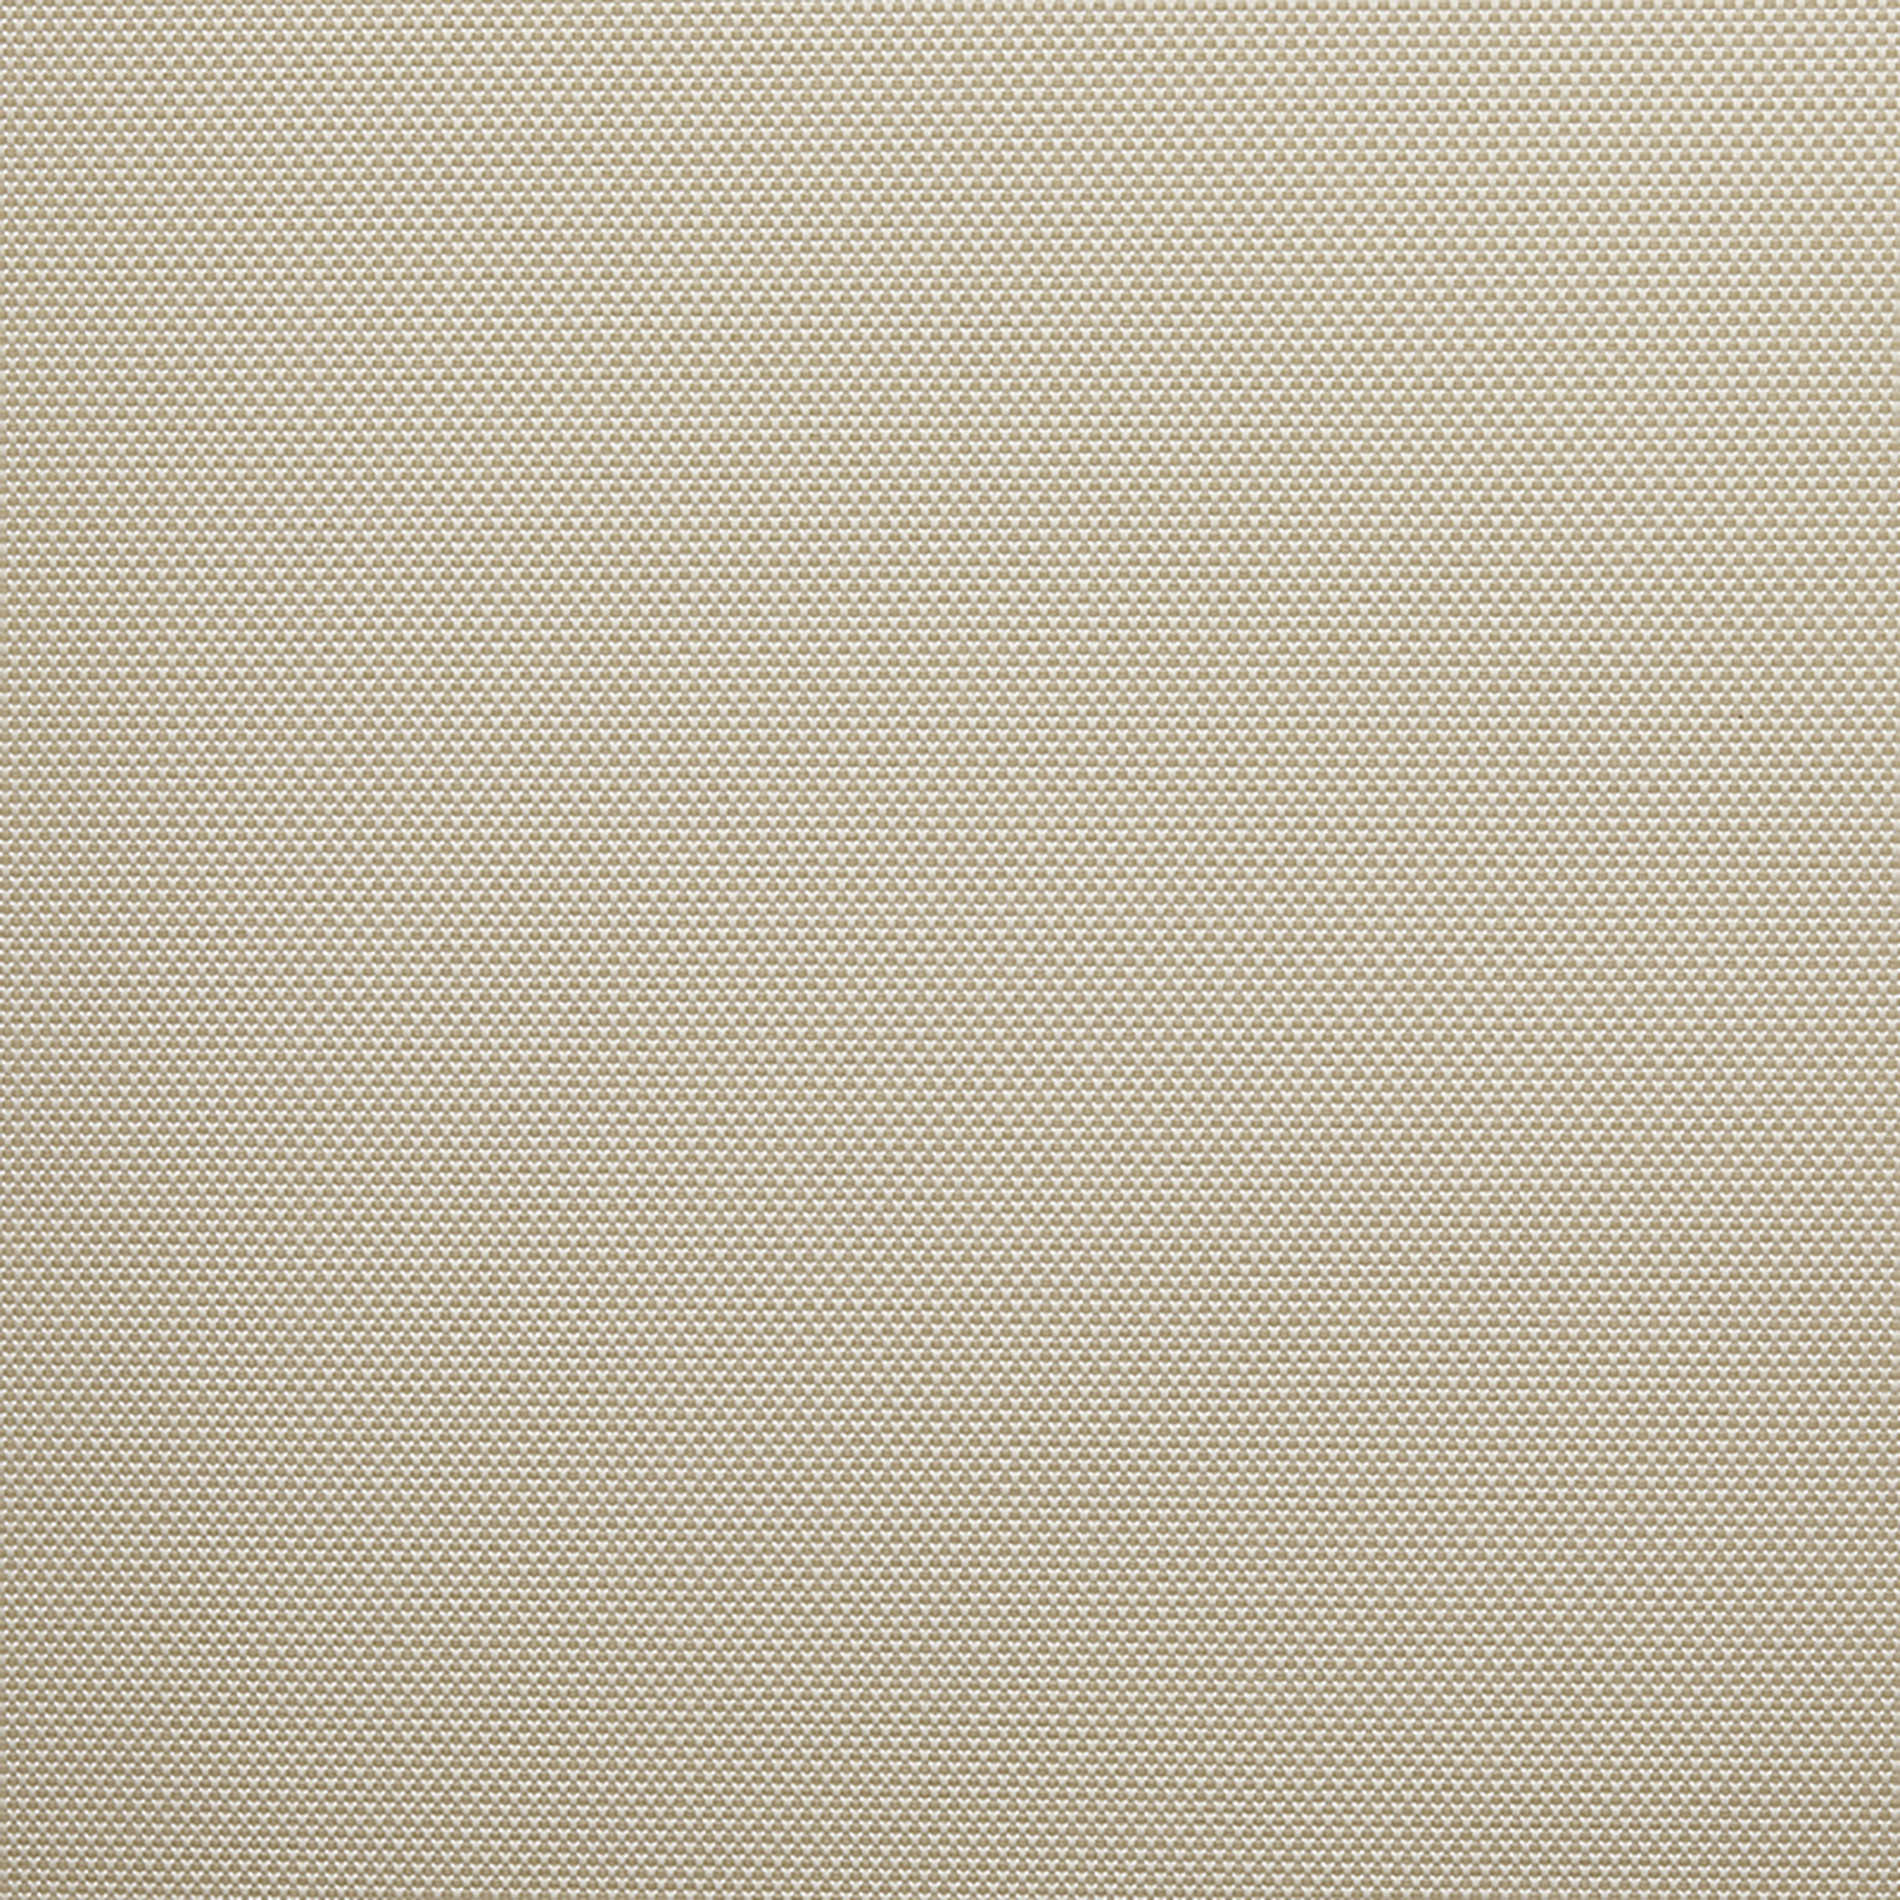 Altex - Fabric - ARGON_1 - White/Beige - ARGON_102